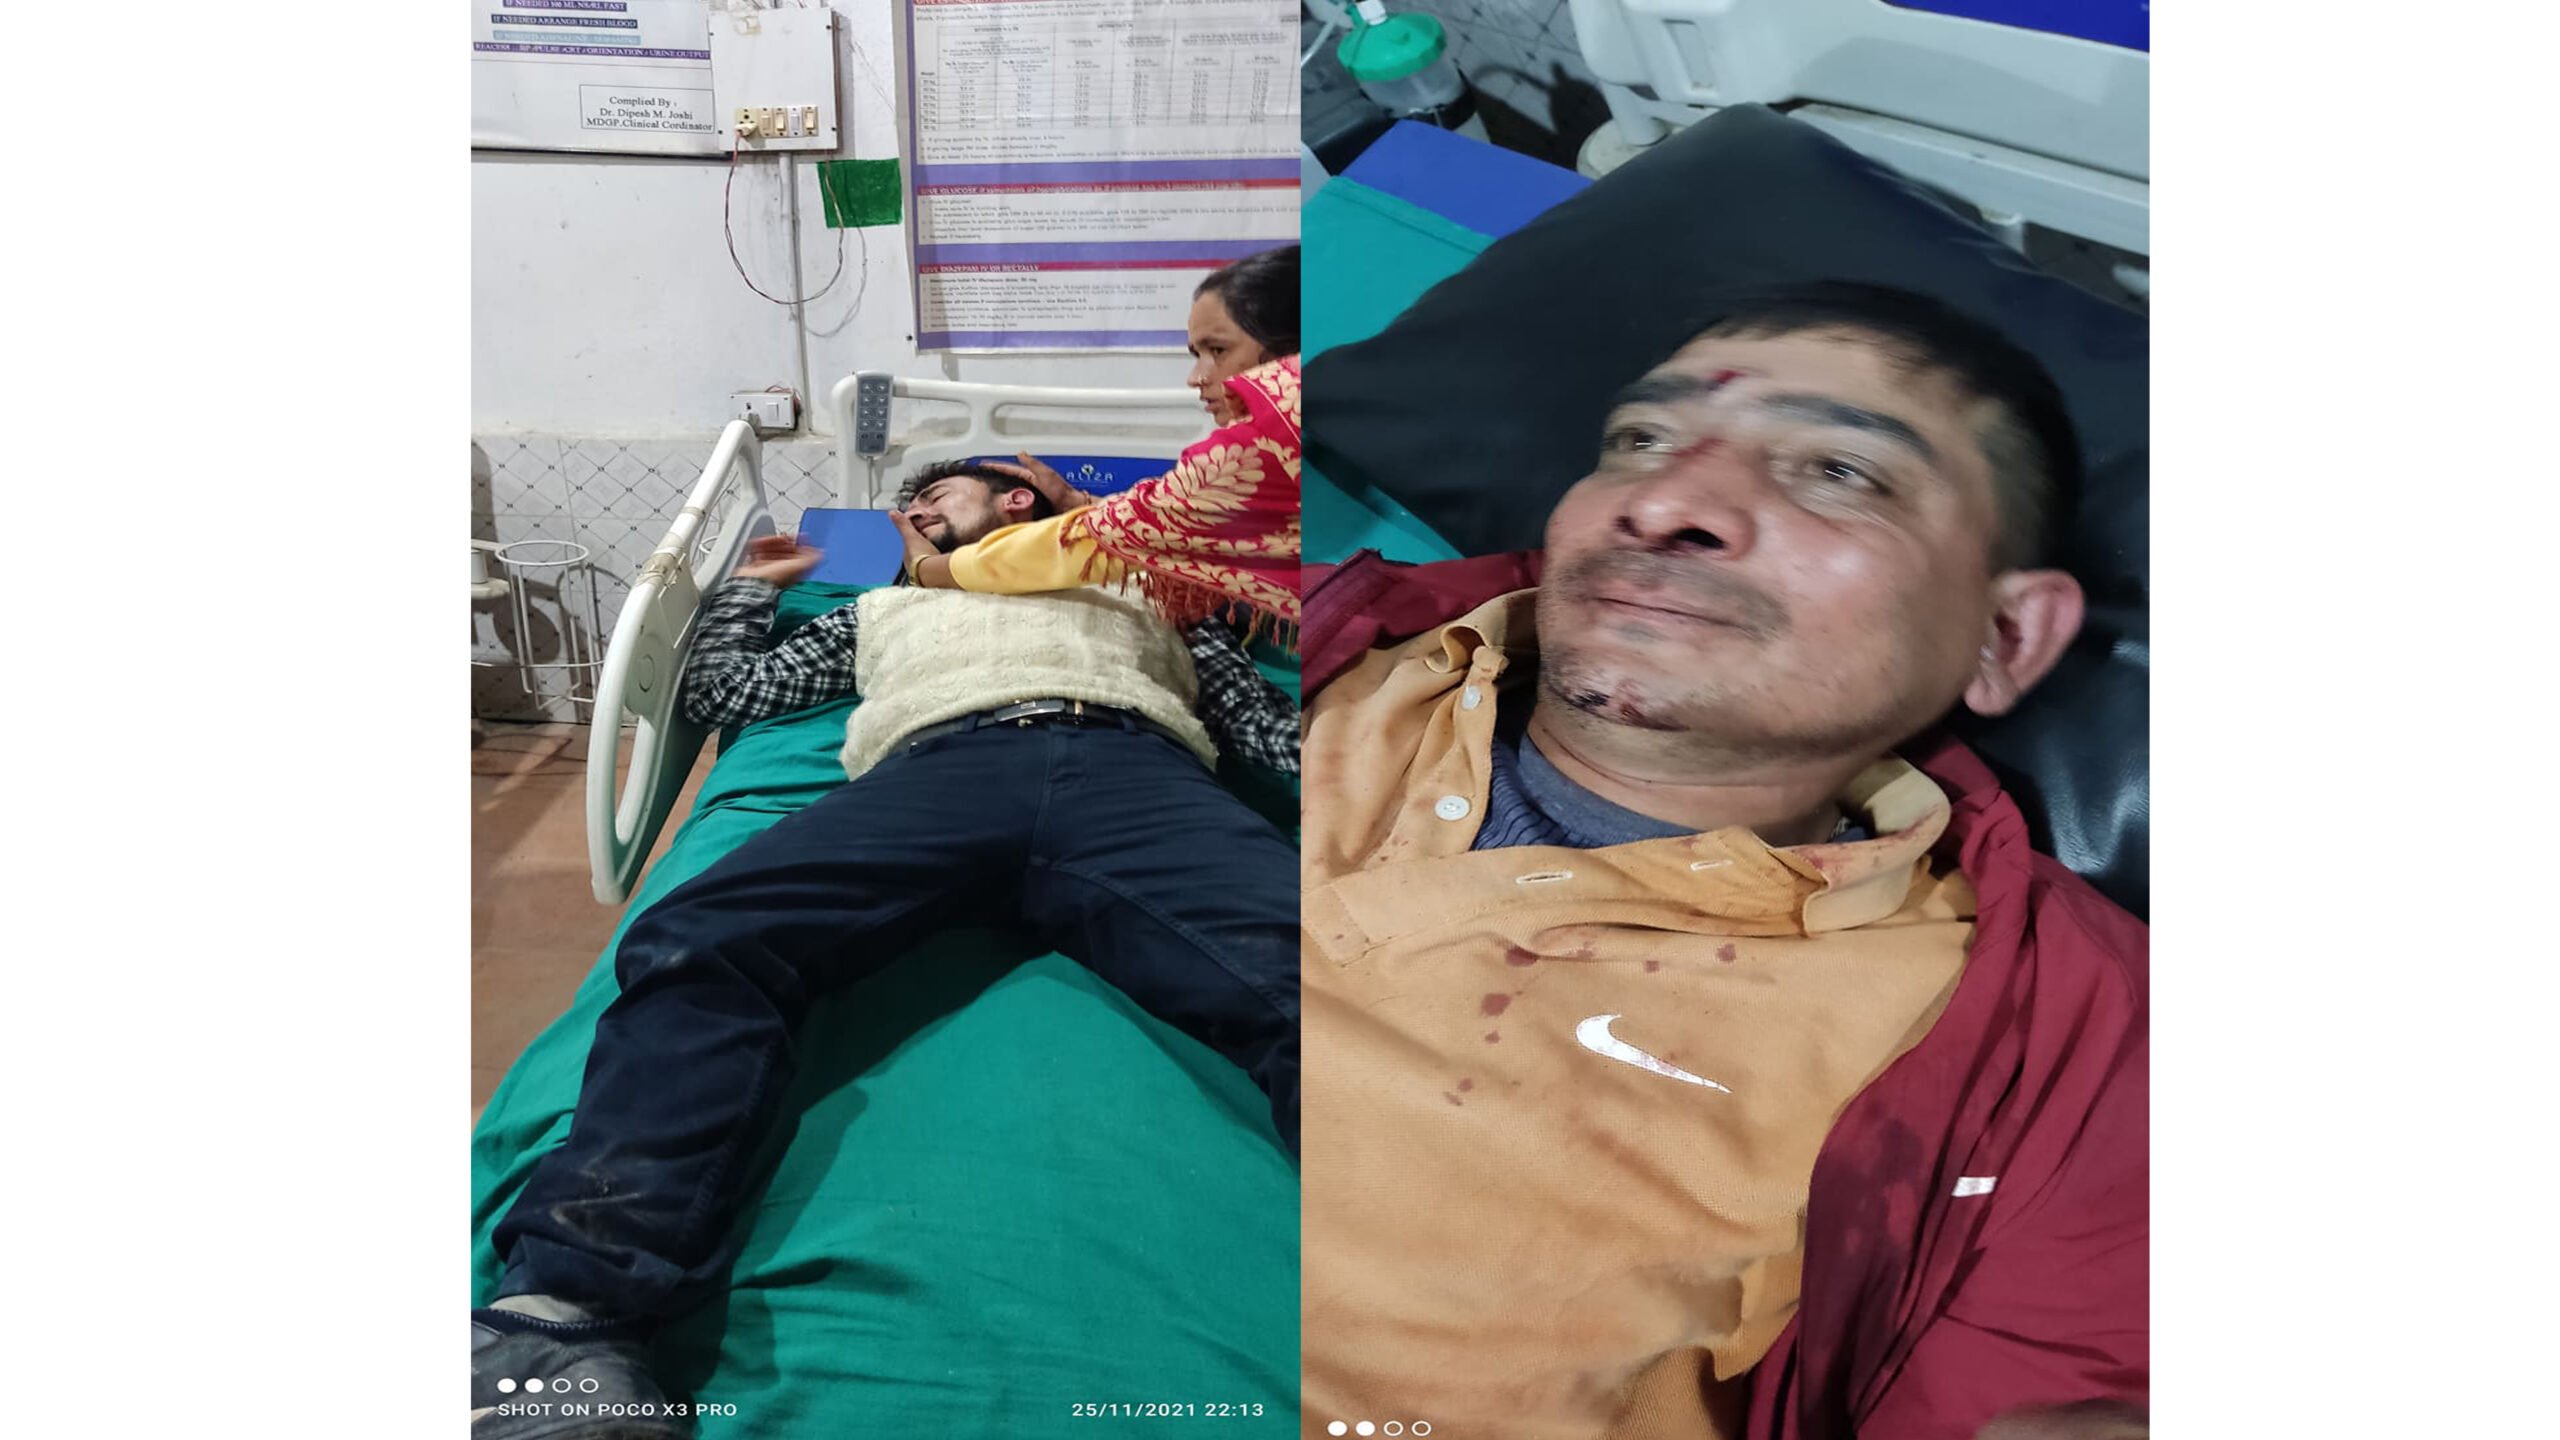 नेपाली काँग्रेस दार्चुलाको मतगणना स्थलमा दुइ पक्षबीच झडप हुदा आधा दर्जन घाइते, जिल्ला अस्पतालमा उपचार हुँदै